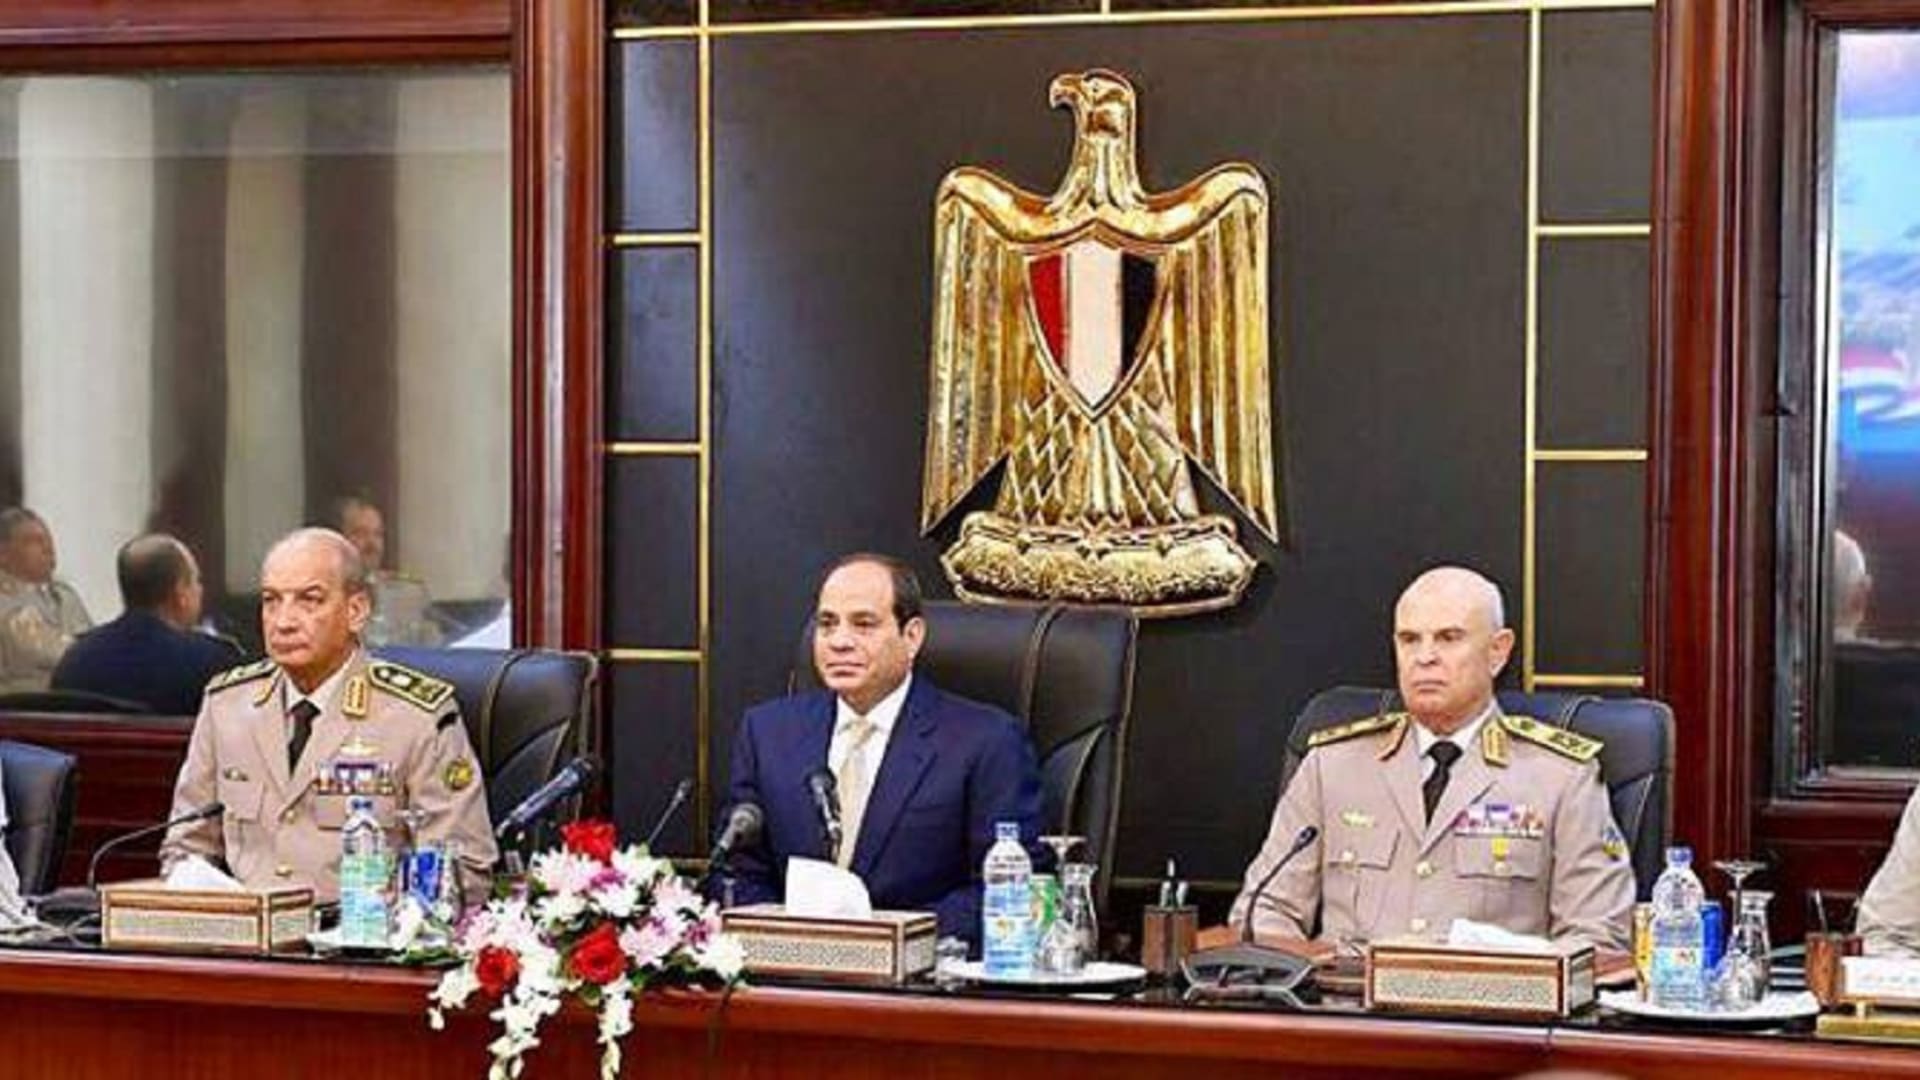 انفوجرافيك... أبرز المحطات في حياة الرئيس المصري عبدالفتاح السيسي